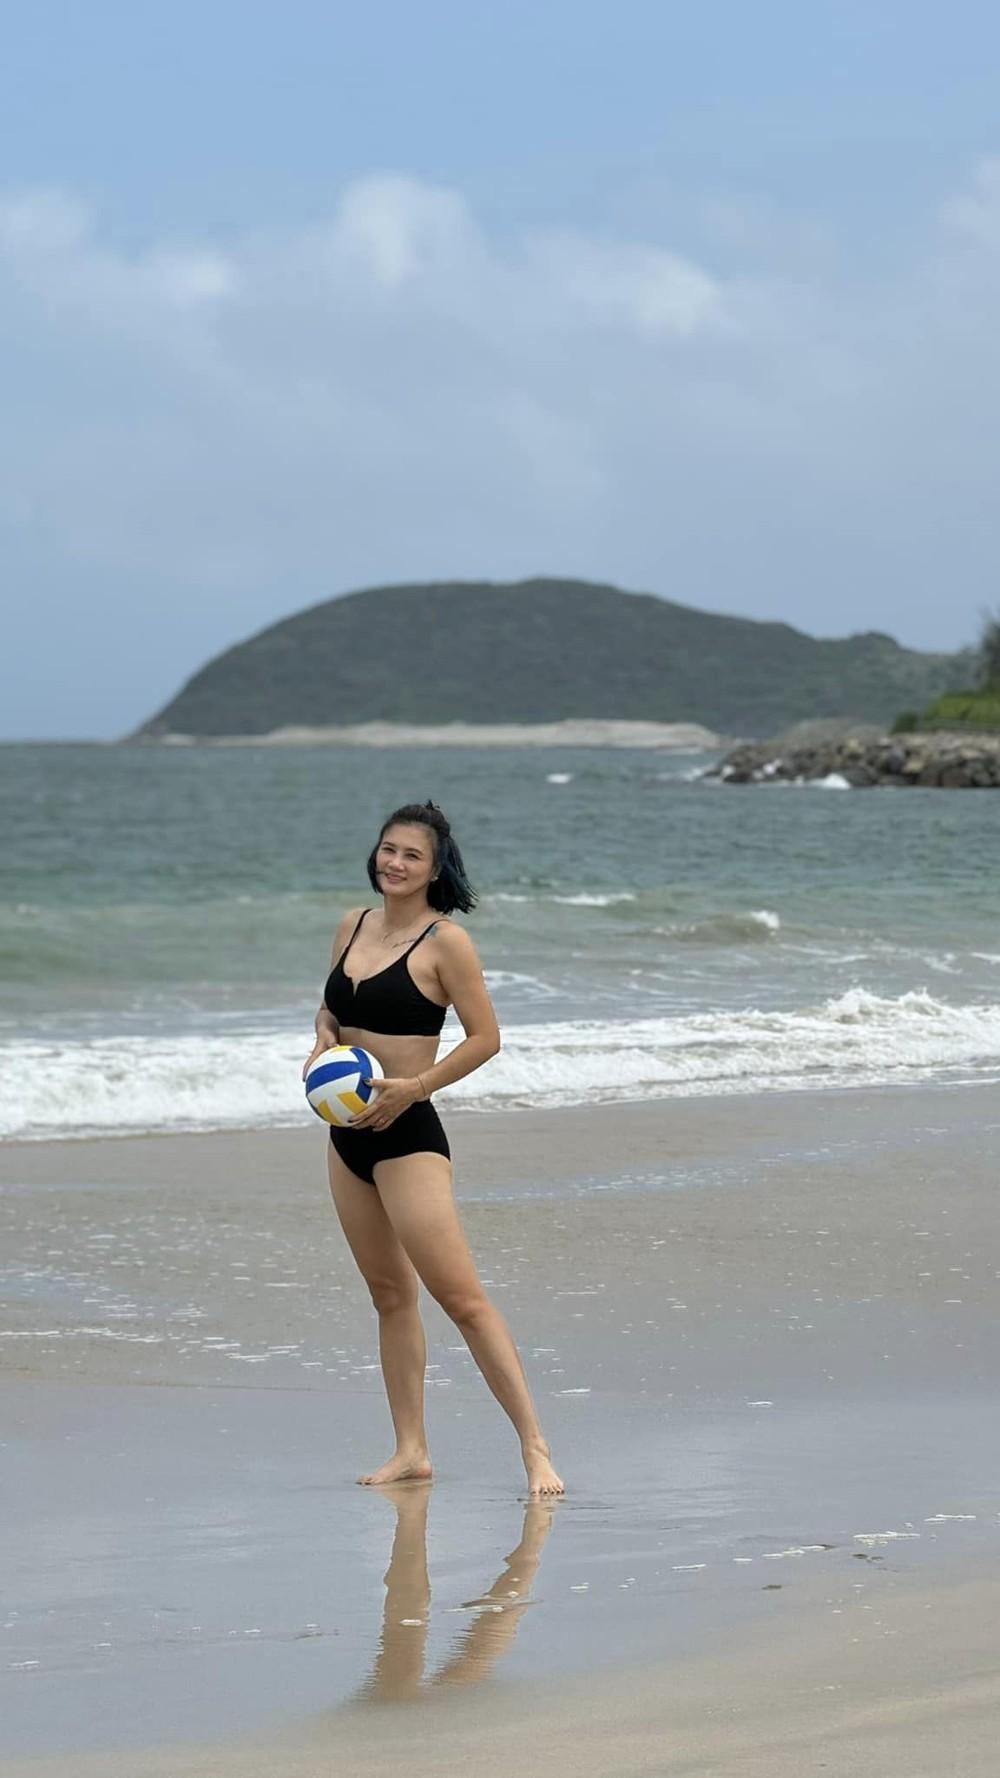 Hoa khôi bóng chuyền Kim Huệ: Diện bikini khoe sắc vóc U45, được khen đẹp quá-2